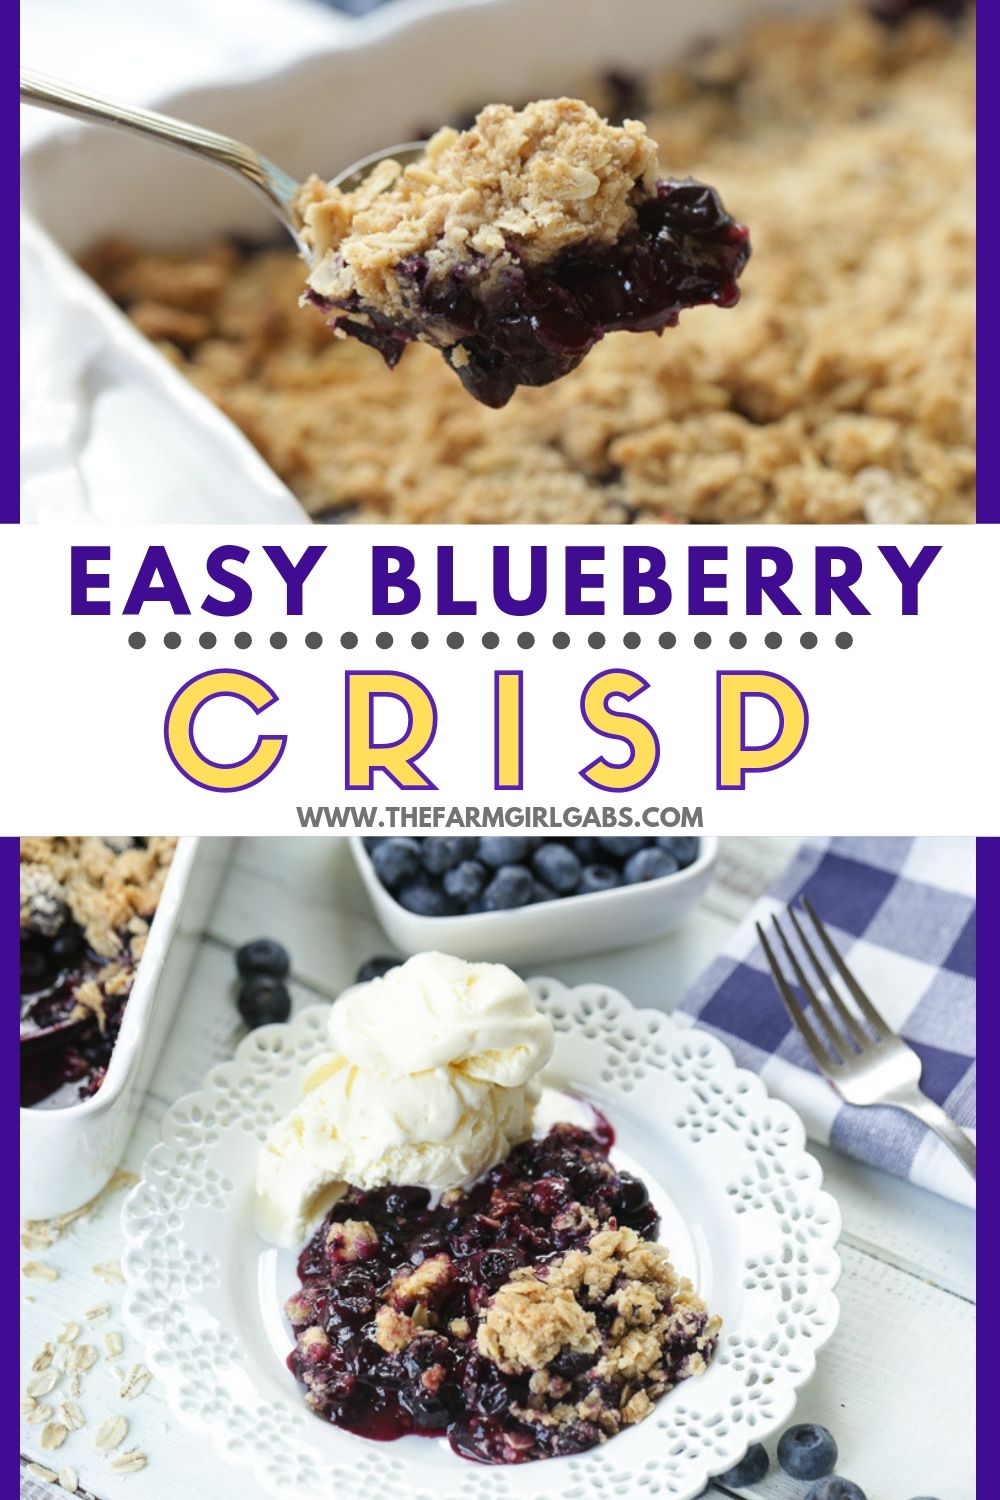 Quick & Easy Blueberry Crisp - The Farm Girl Gabs®